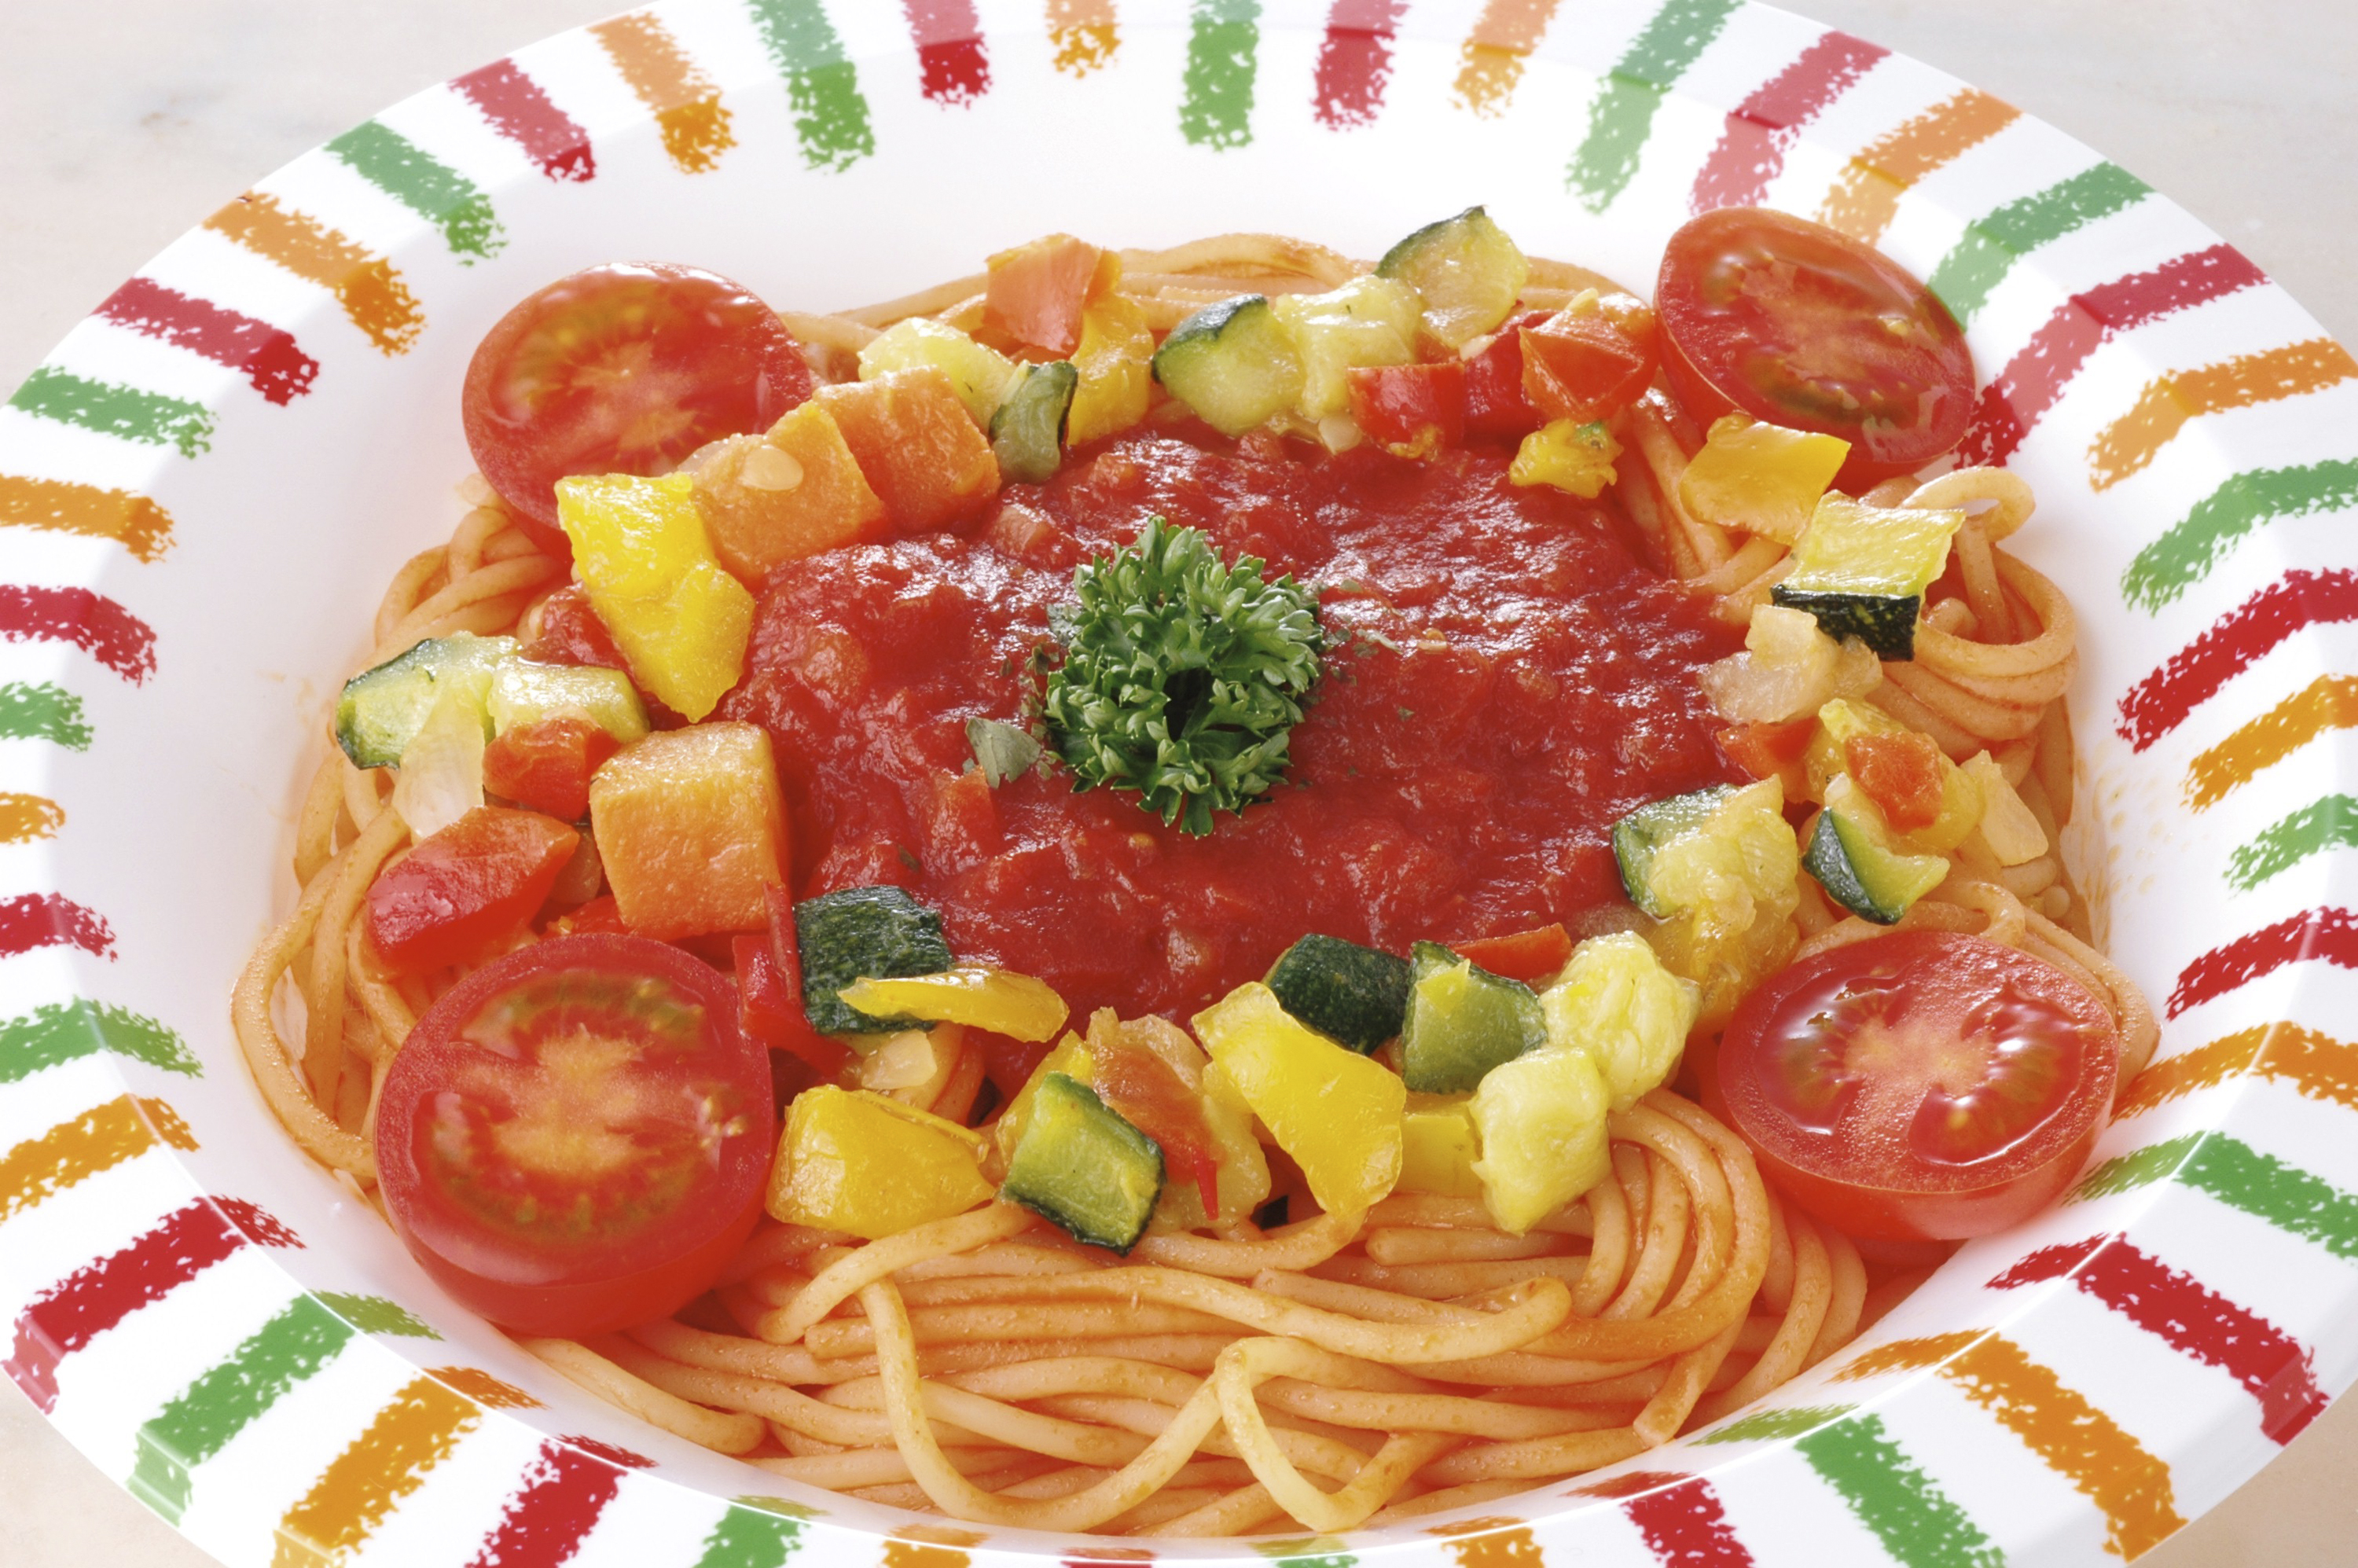 【業務用】カゴメ ダイストマト イタリア産 800g